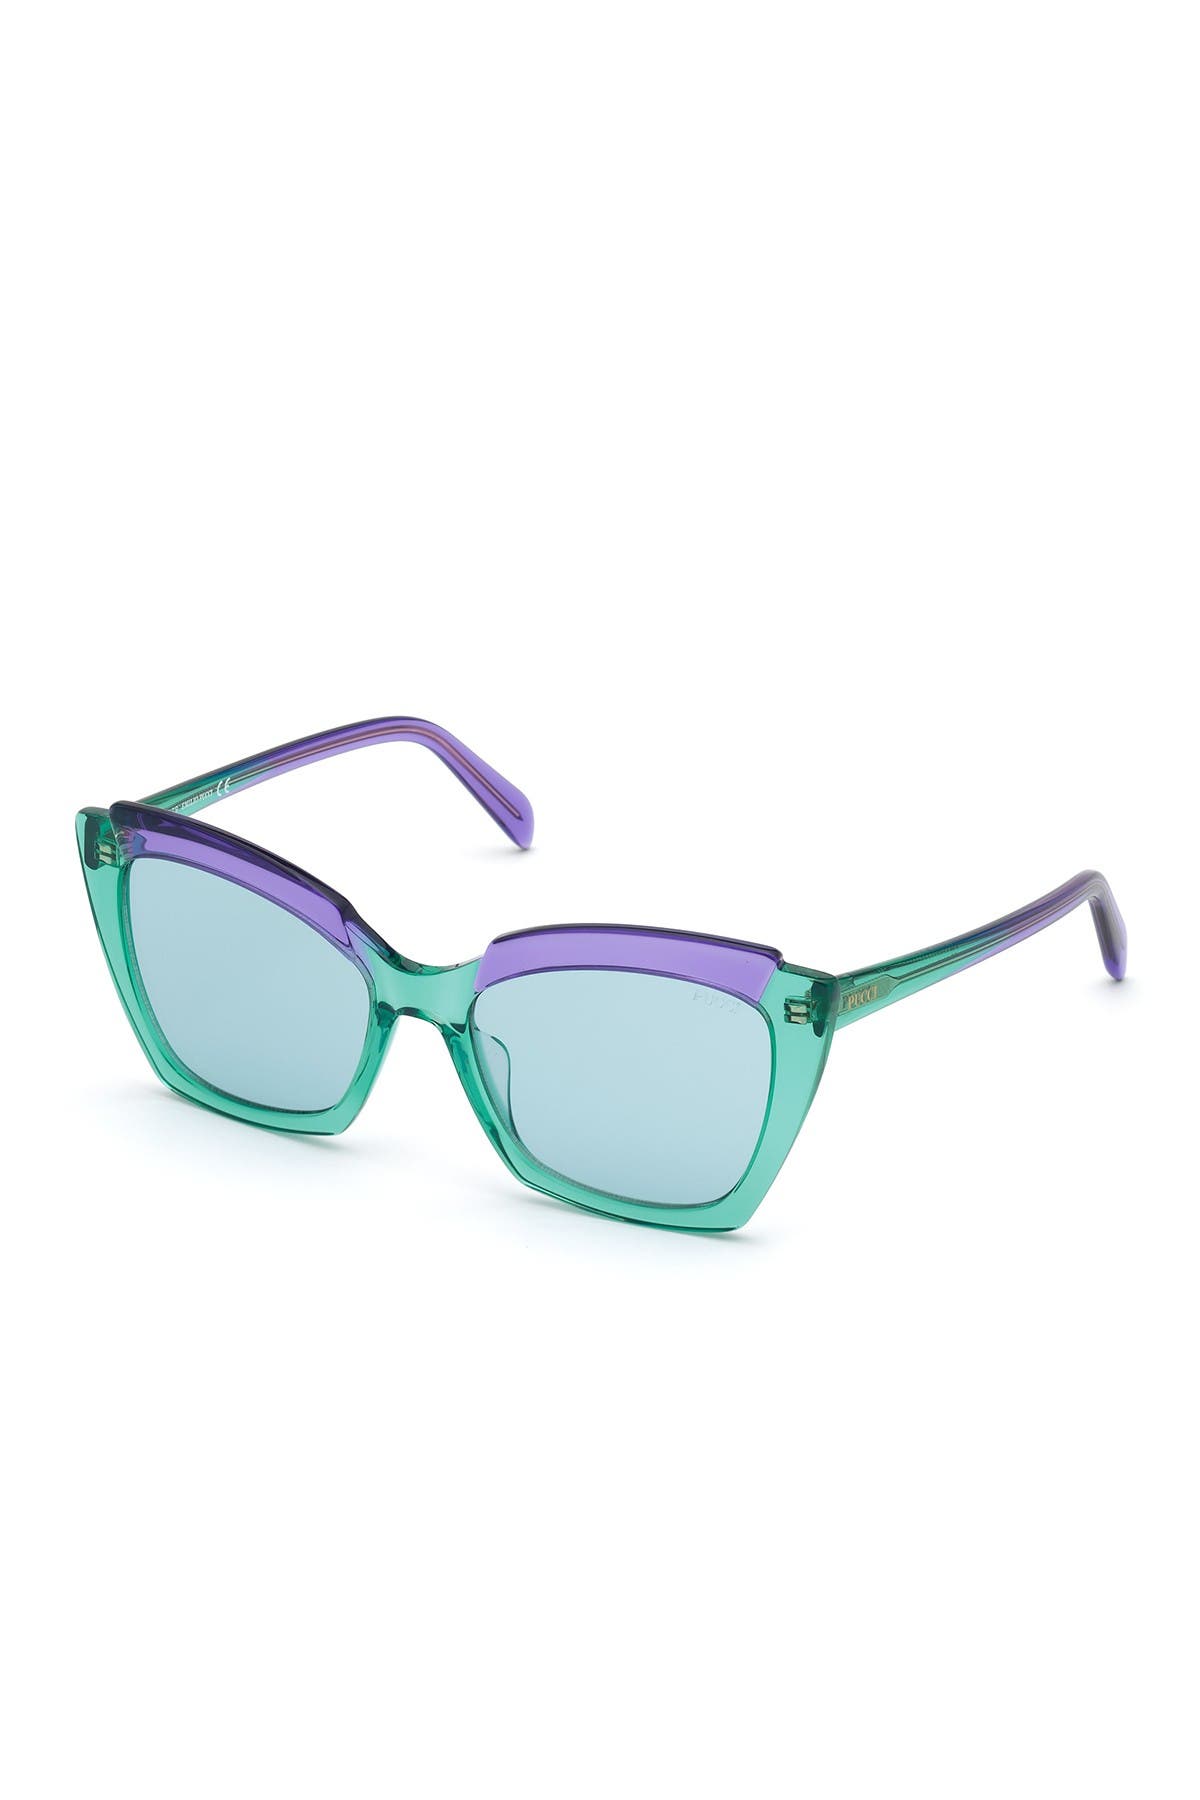 Emilio Pucci 56mm Square Sunglasses In Turqo/blu